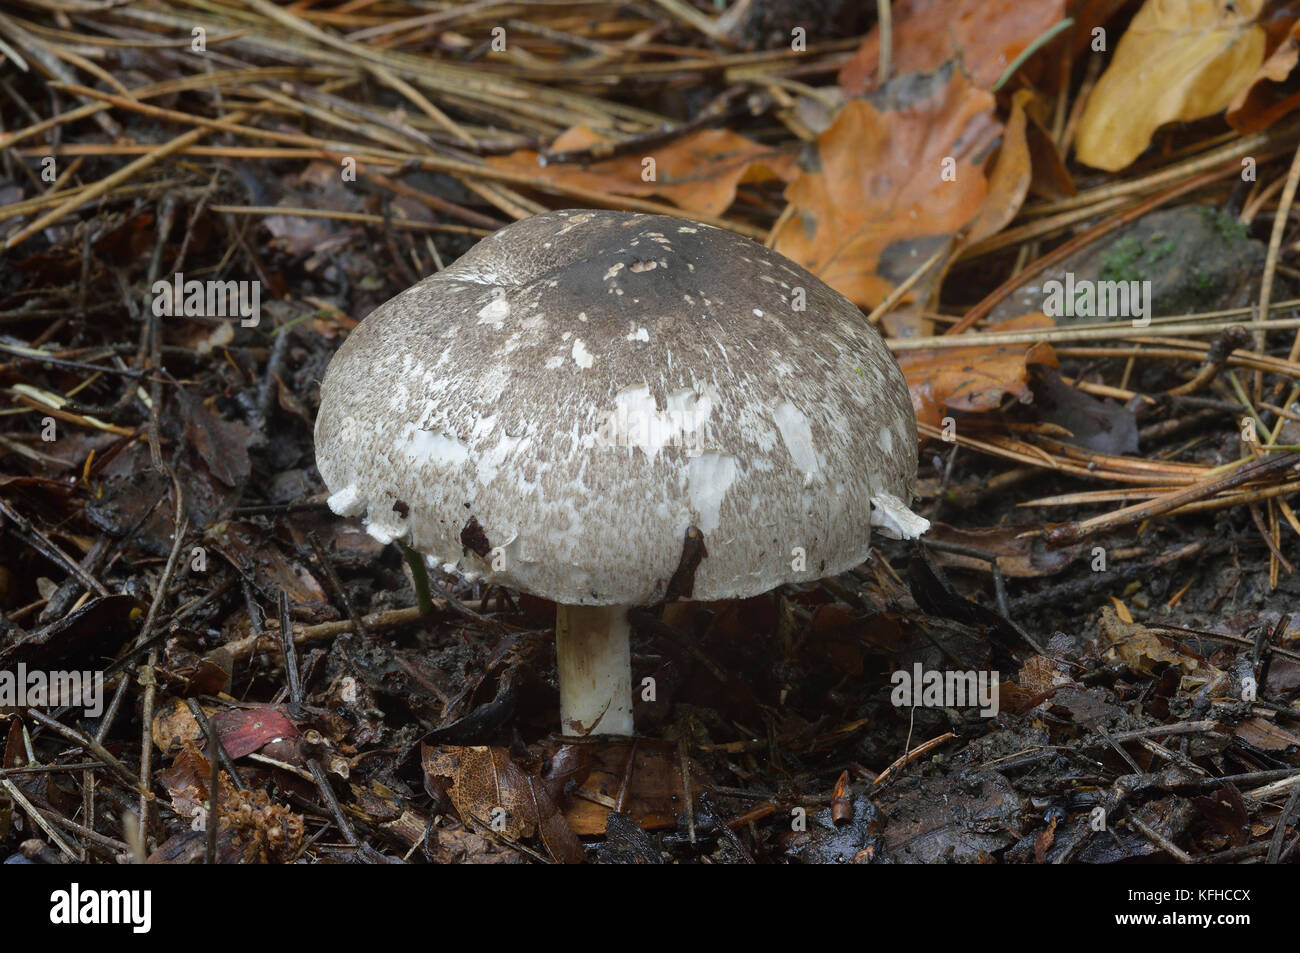 Agaricus moelleri - Inky Mushroom or Grey Stainer Stock Photo